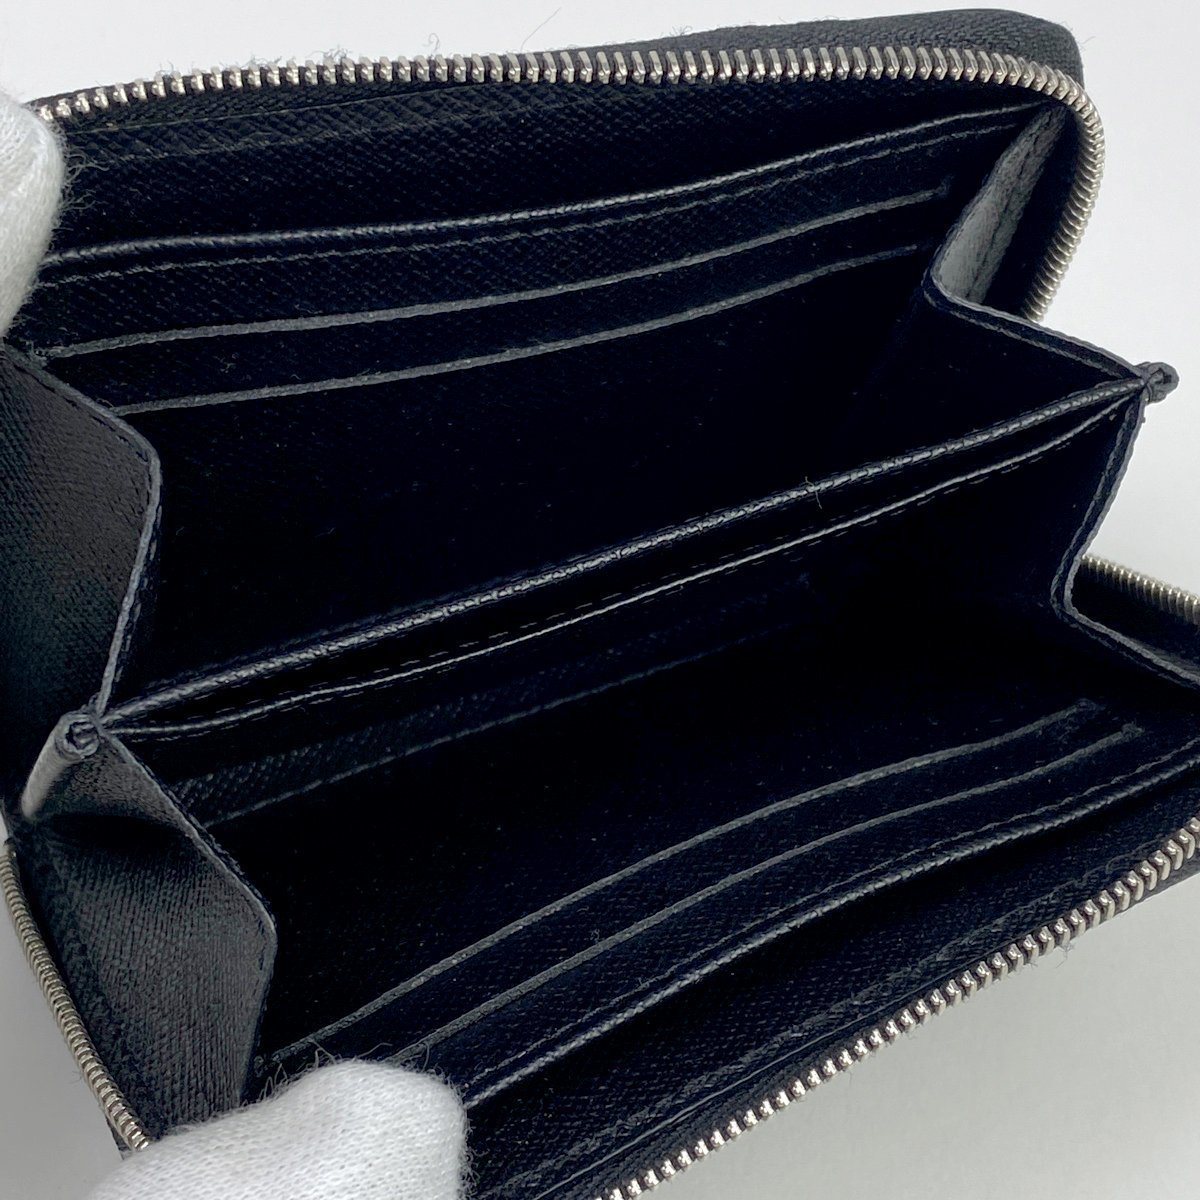 ルイ・ヴィトン Louis Vuitton ジッピー コインパース 小銭入れ カードケース コインケース エピ ノワール(ブラック) M60152 メンズ 中古_バイセル 14184_6